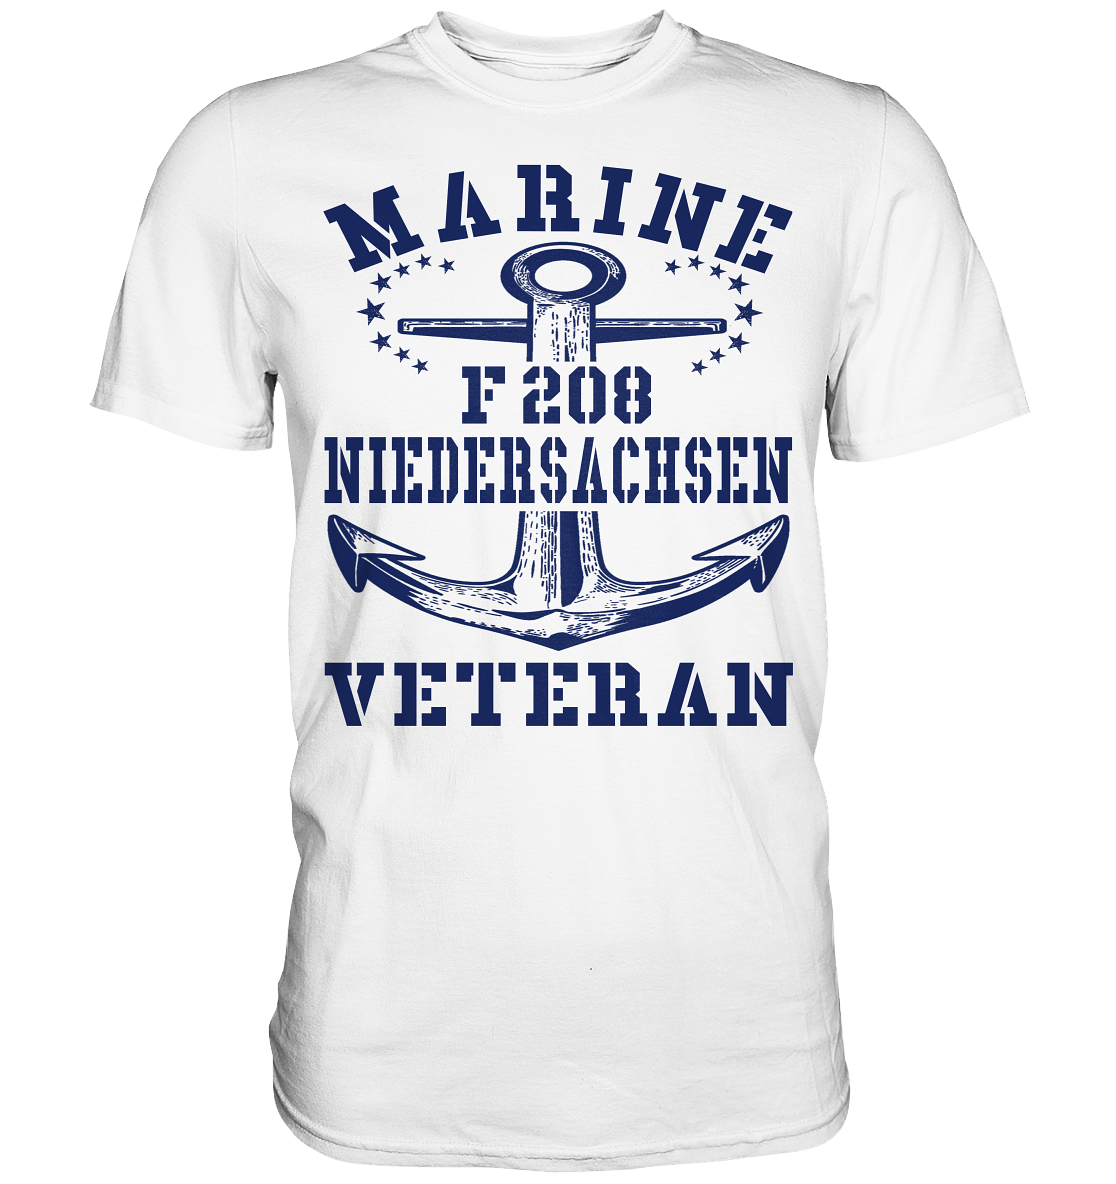 MV1 Fregatte F208 NIEDERSACHSEN - Premium Shirt